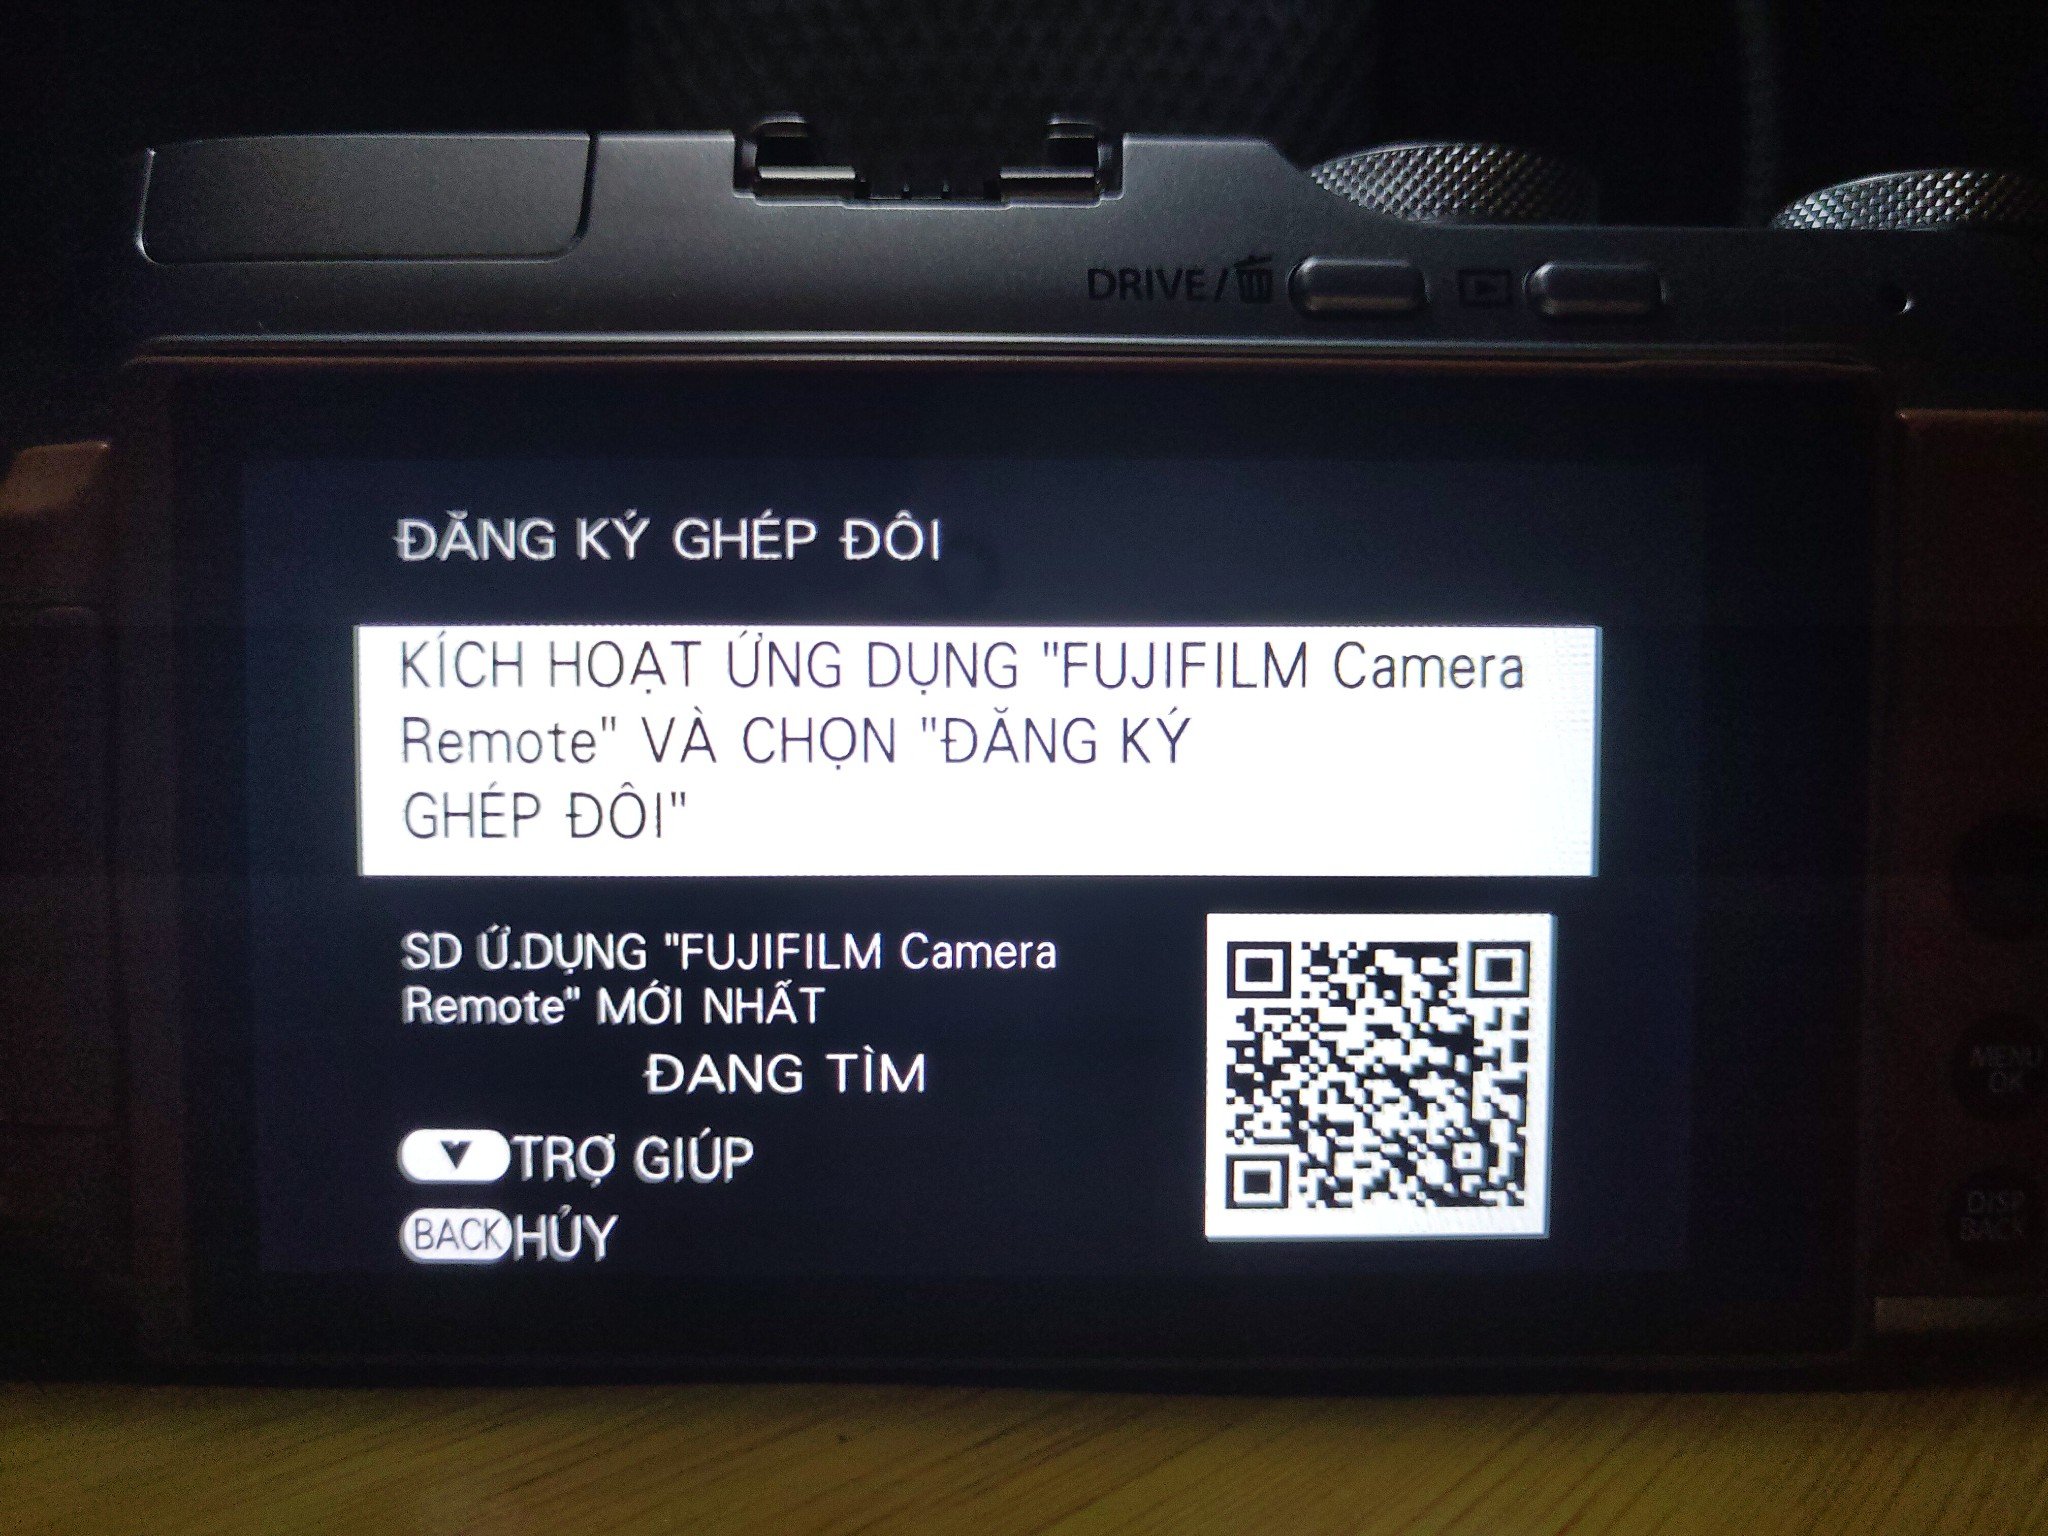 Cách nâng cấp Firmware máy ảnh Fujifilm bằng smartphone